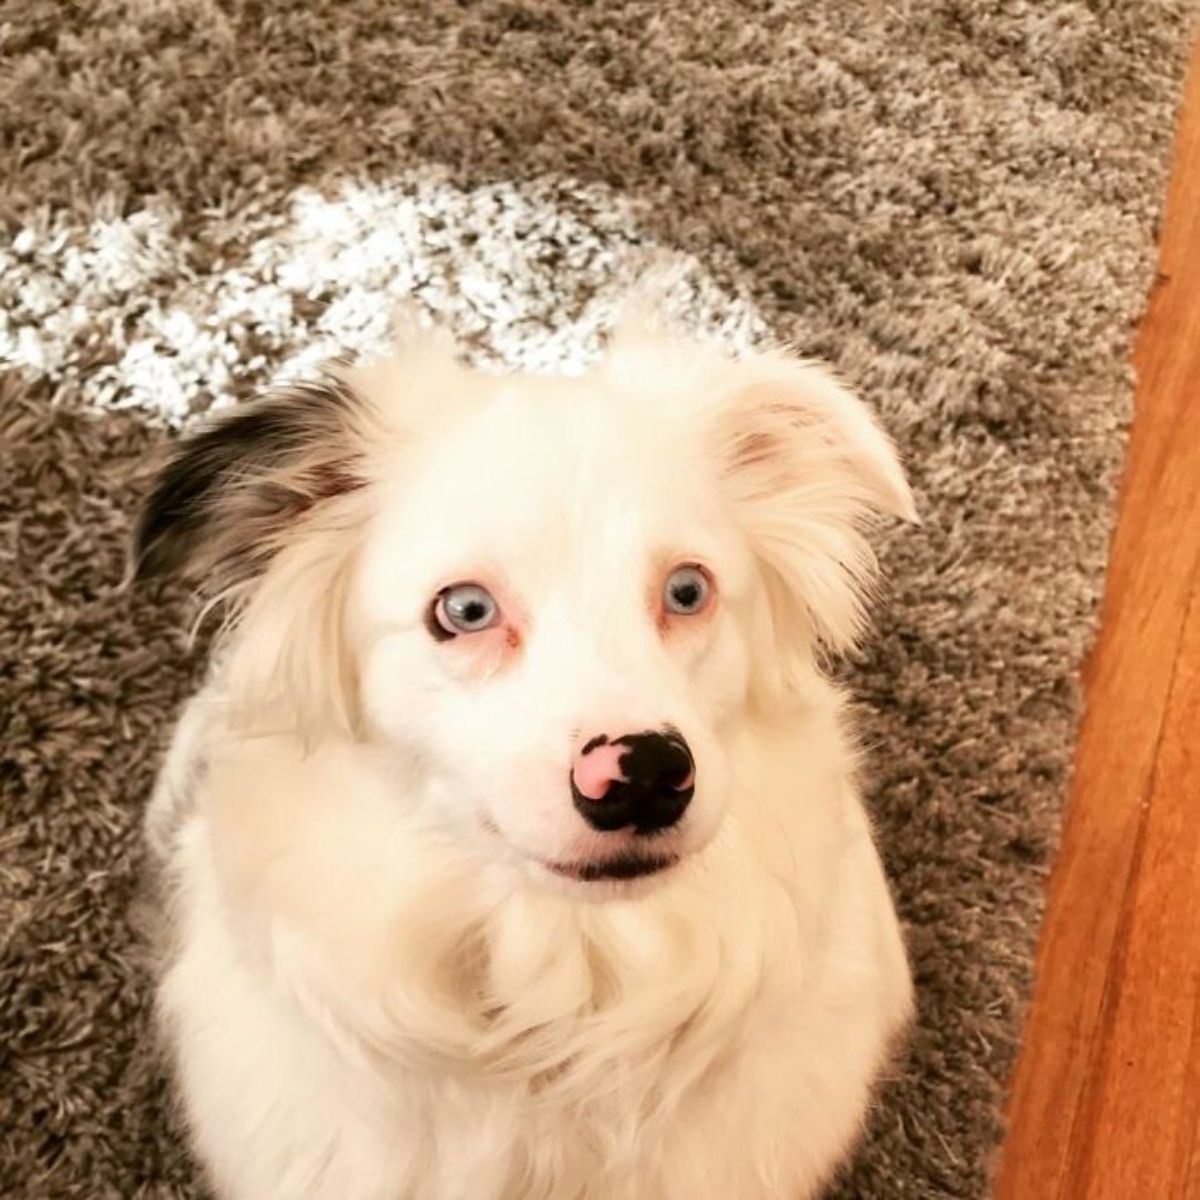 white fluffy dog sitting on dark carpeted floor